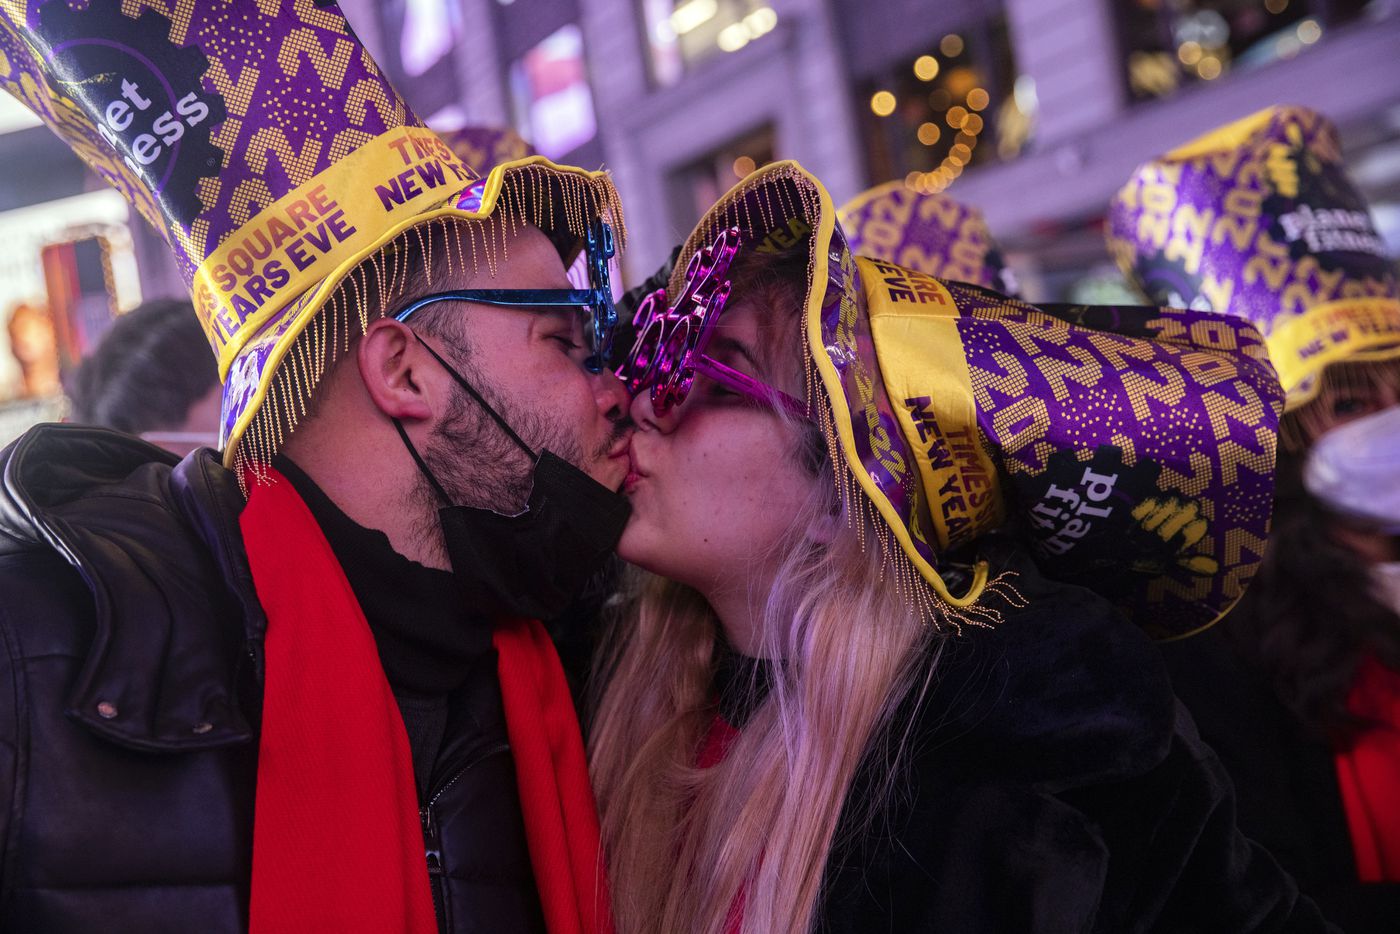  Một cặp đôi trao nhau nụ hôn ngọt ngào ở Quảng trường Thời đại trong thời khắc chuyển giao giữa năm cũ và năm mới. Ảnh: AP